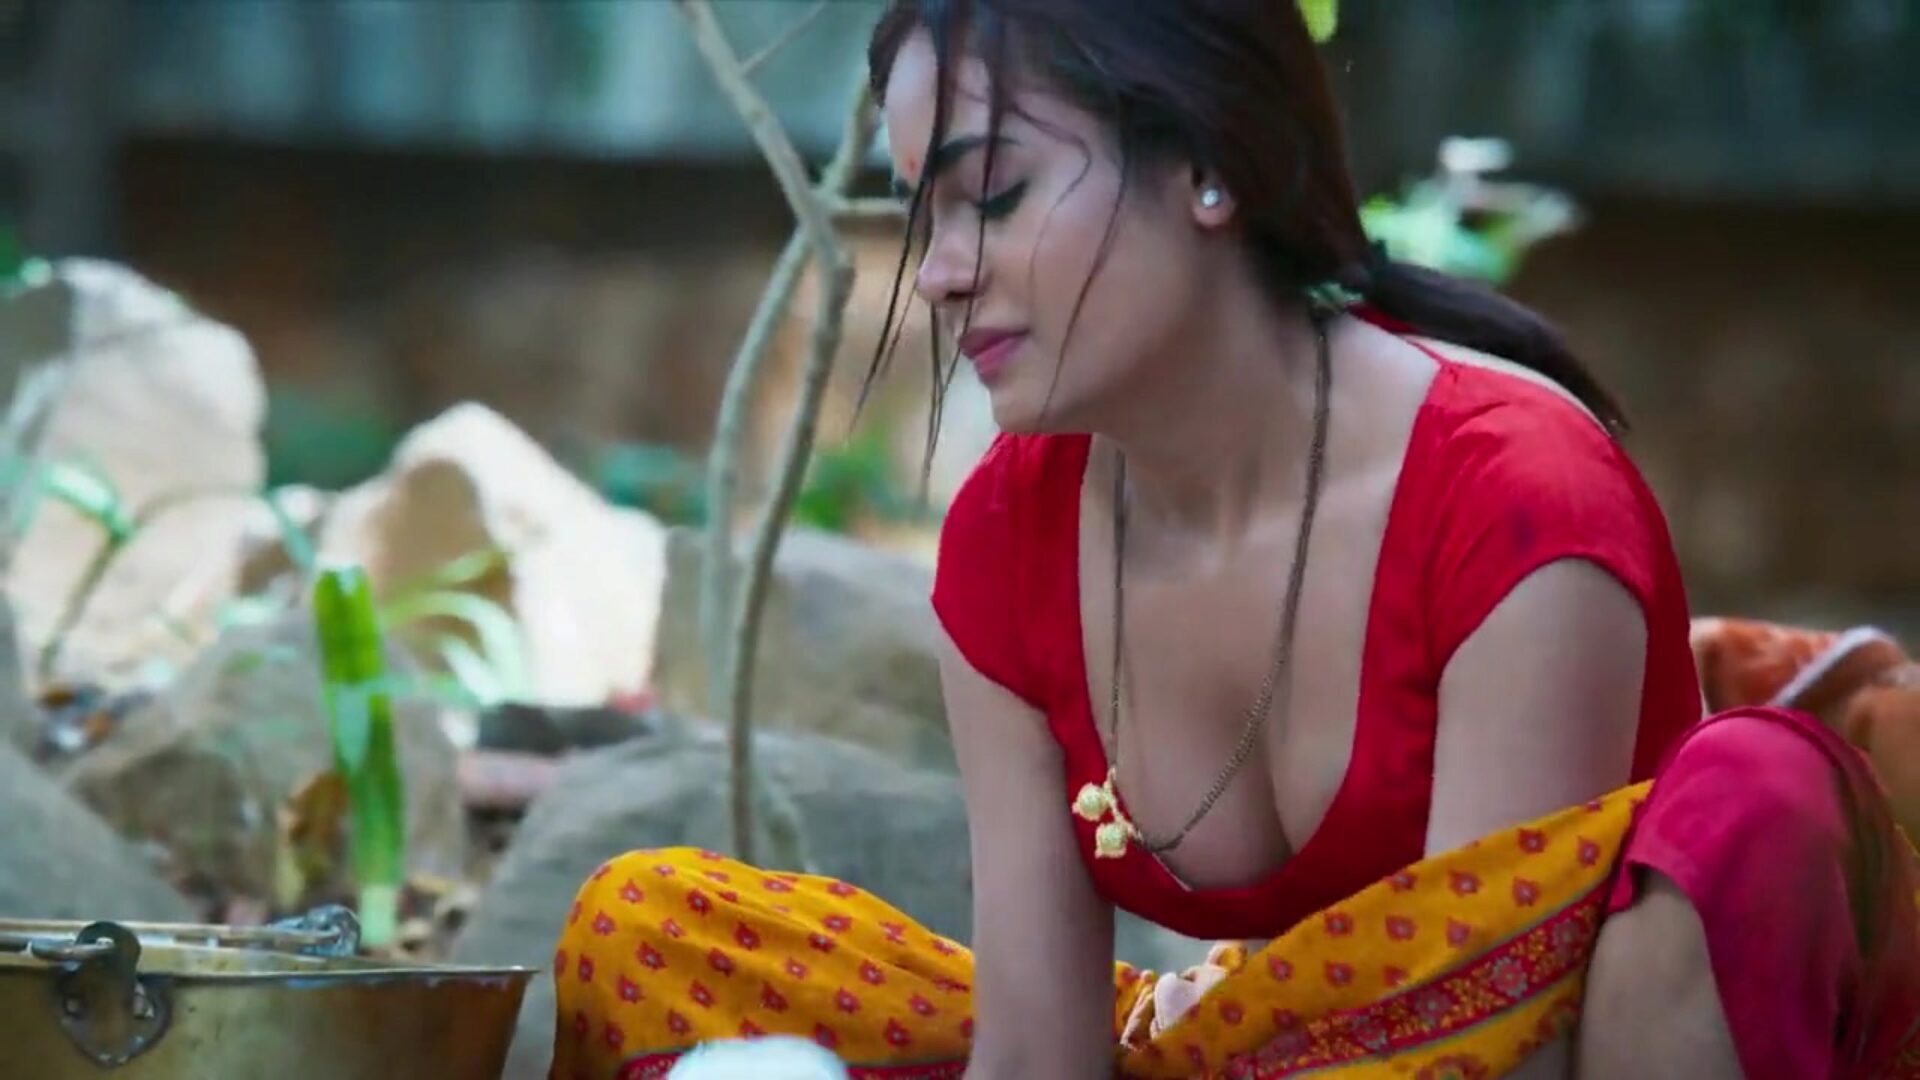 Το dhoban aur sarpanch απολαμβάνει ικανοποιημένο παθιασμένο σεξ ινδική ηθοποιός sikha sinha ως sonu dhoban κάνει παθιασμένο har bang-out με το sarpanch. Σικά γαλακτώδης με το hubby golu dhobi. Το sikha sinha χτύπησε σε διάφορες οργανικές θέσεις sonu dhoban ka joban mastram